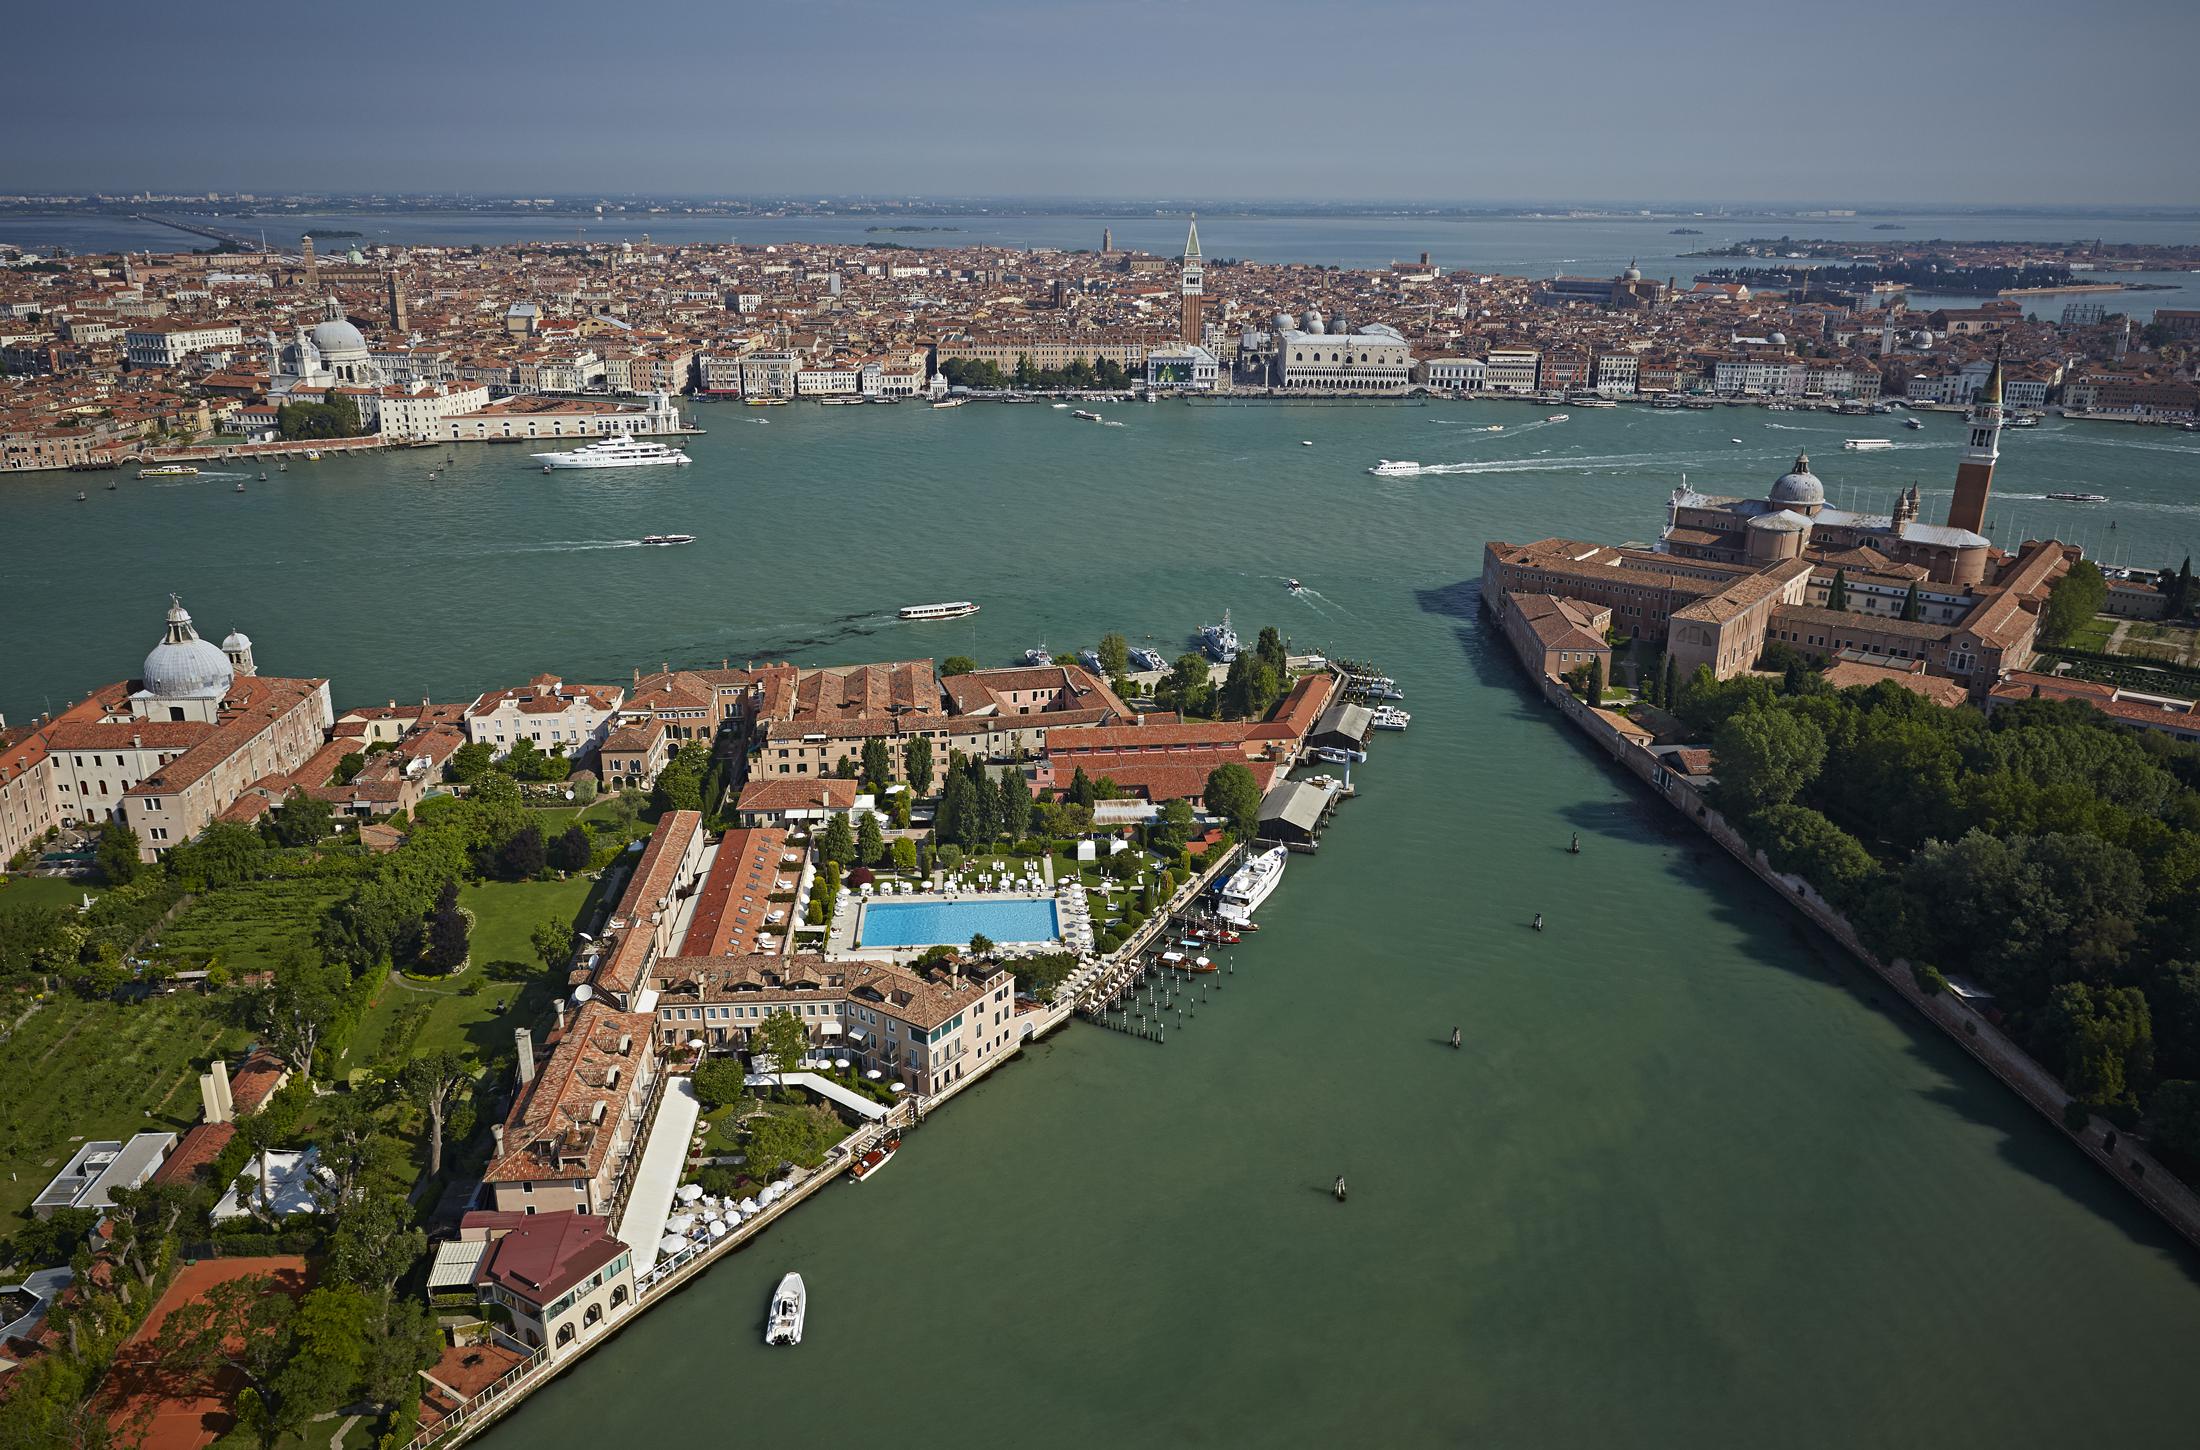 Vista aerea del Belmond Hotel Cipriani, copyright Tyson Sadloani